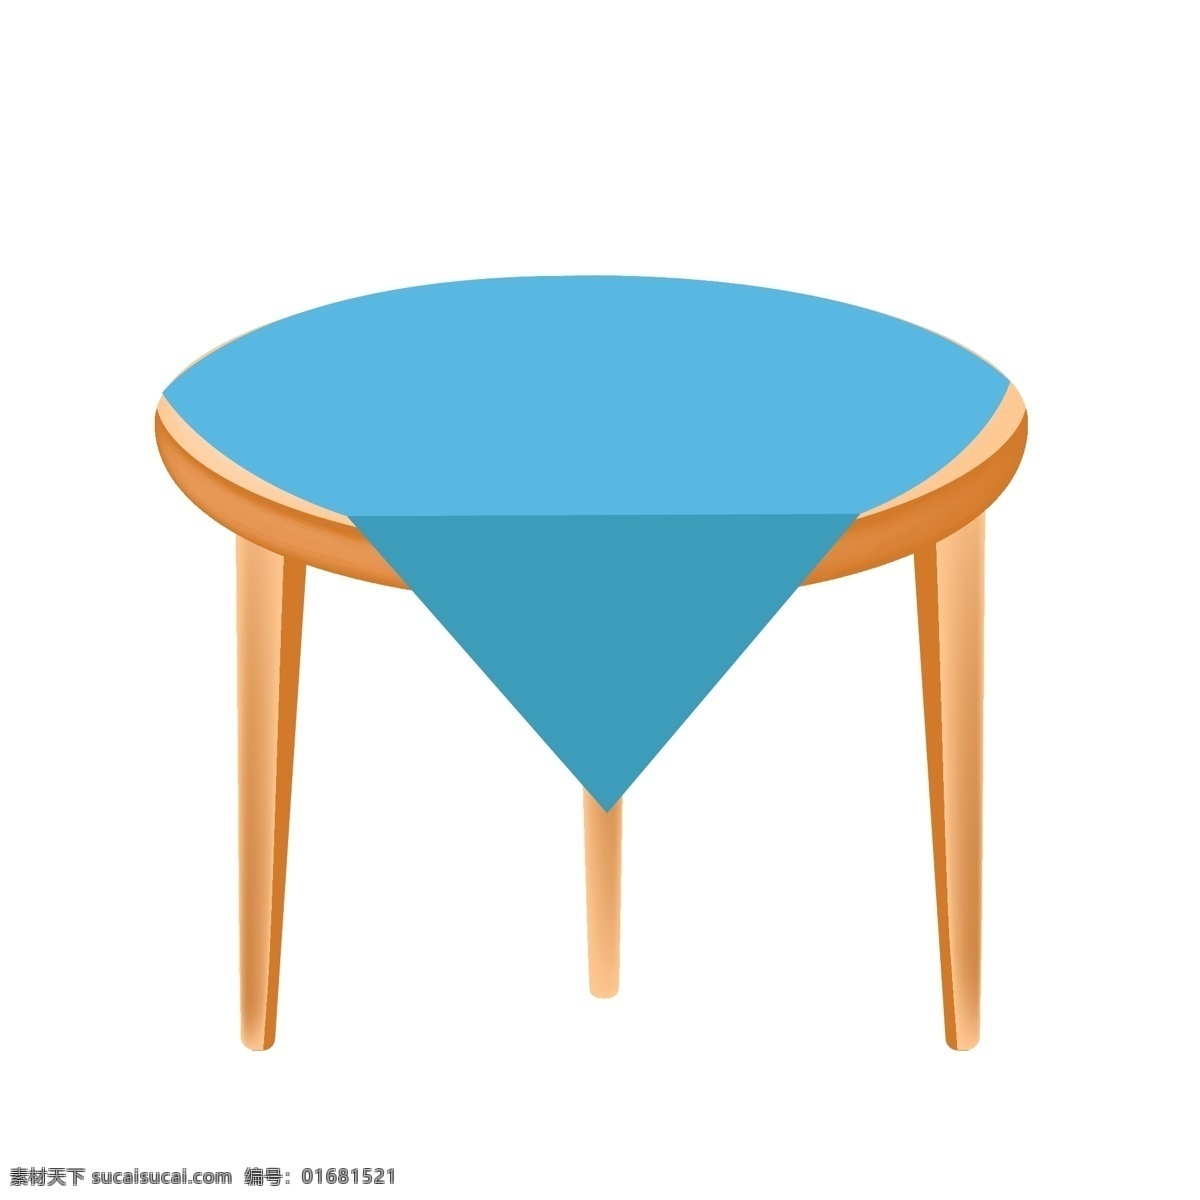 蓝色 桌布 装修 插图 黄色桌子 木质桌子 木纹桌子 蓝色桌布 生活用品 桌子装饰 漂亮的桌子 吃饭工具